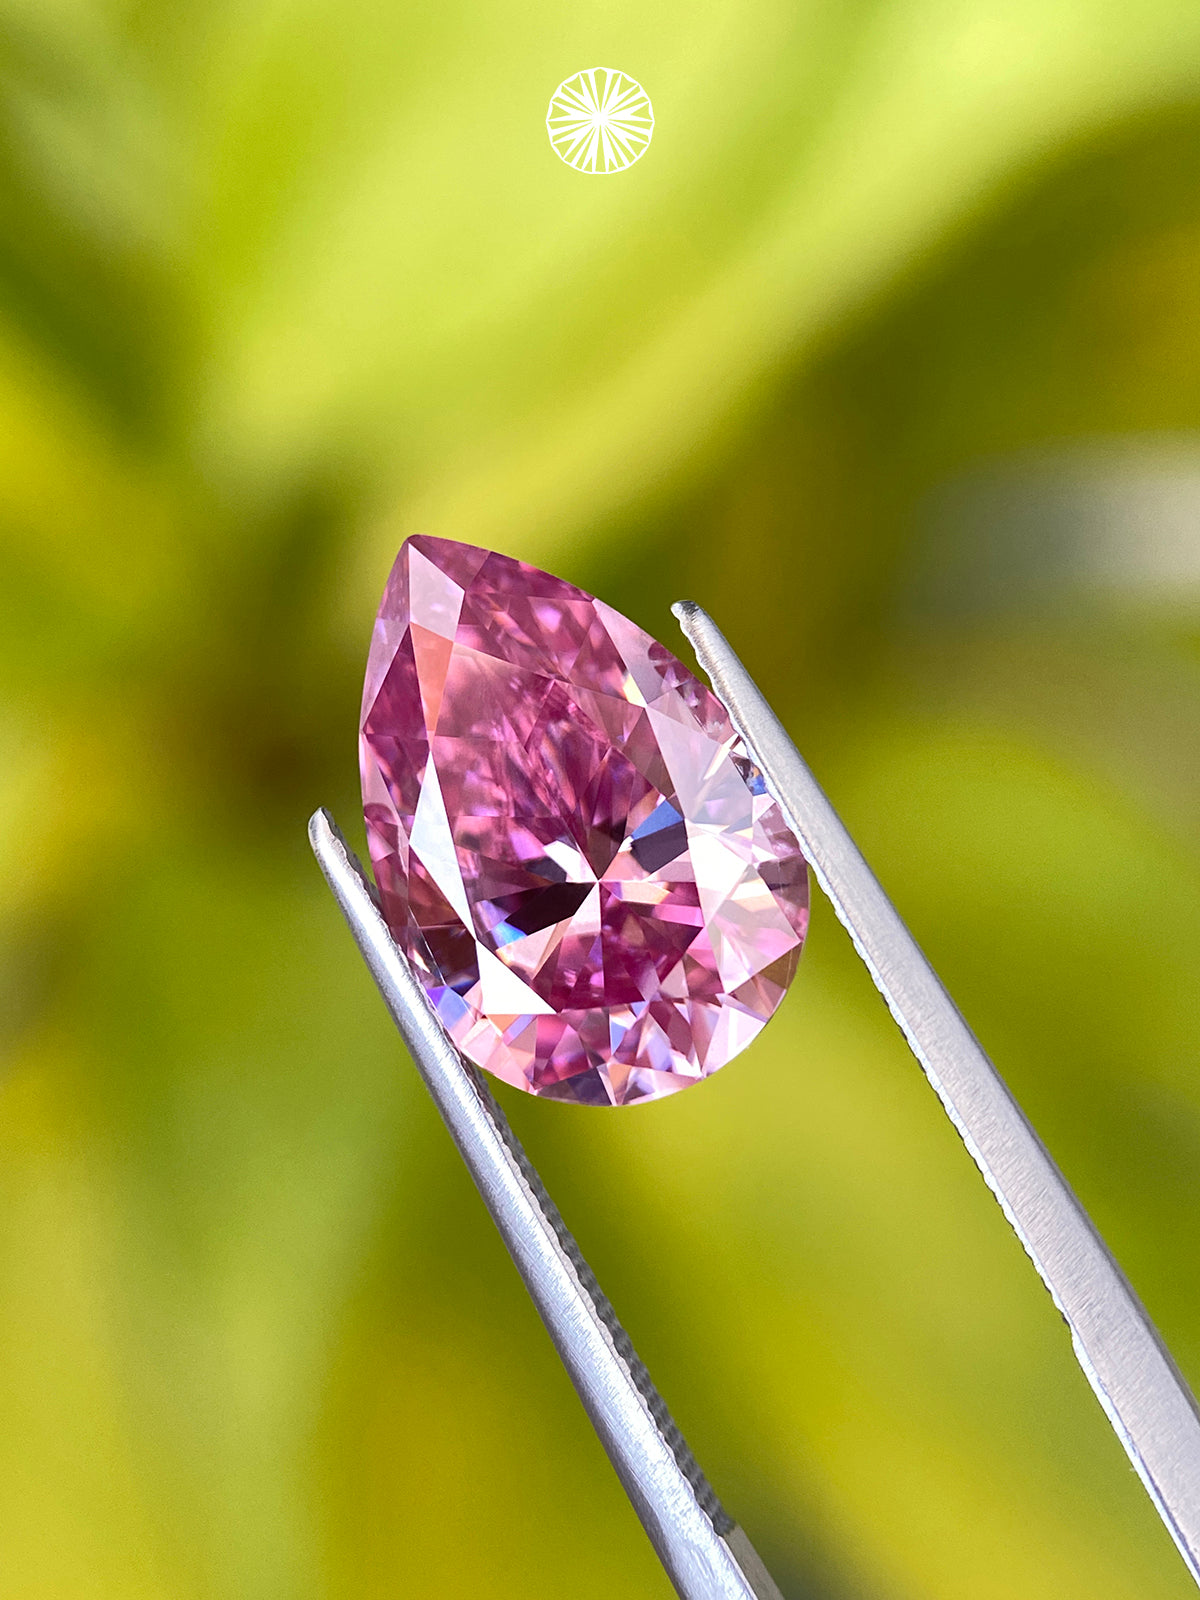 Sakura Pink Pear Cut Teardrop Shape Moissanite Diamond Loose Gemstones GRA Certified Light Pink VVS1 Moissanite Fancy Cut for Jewelry Making